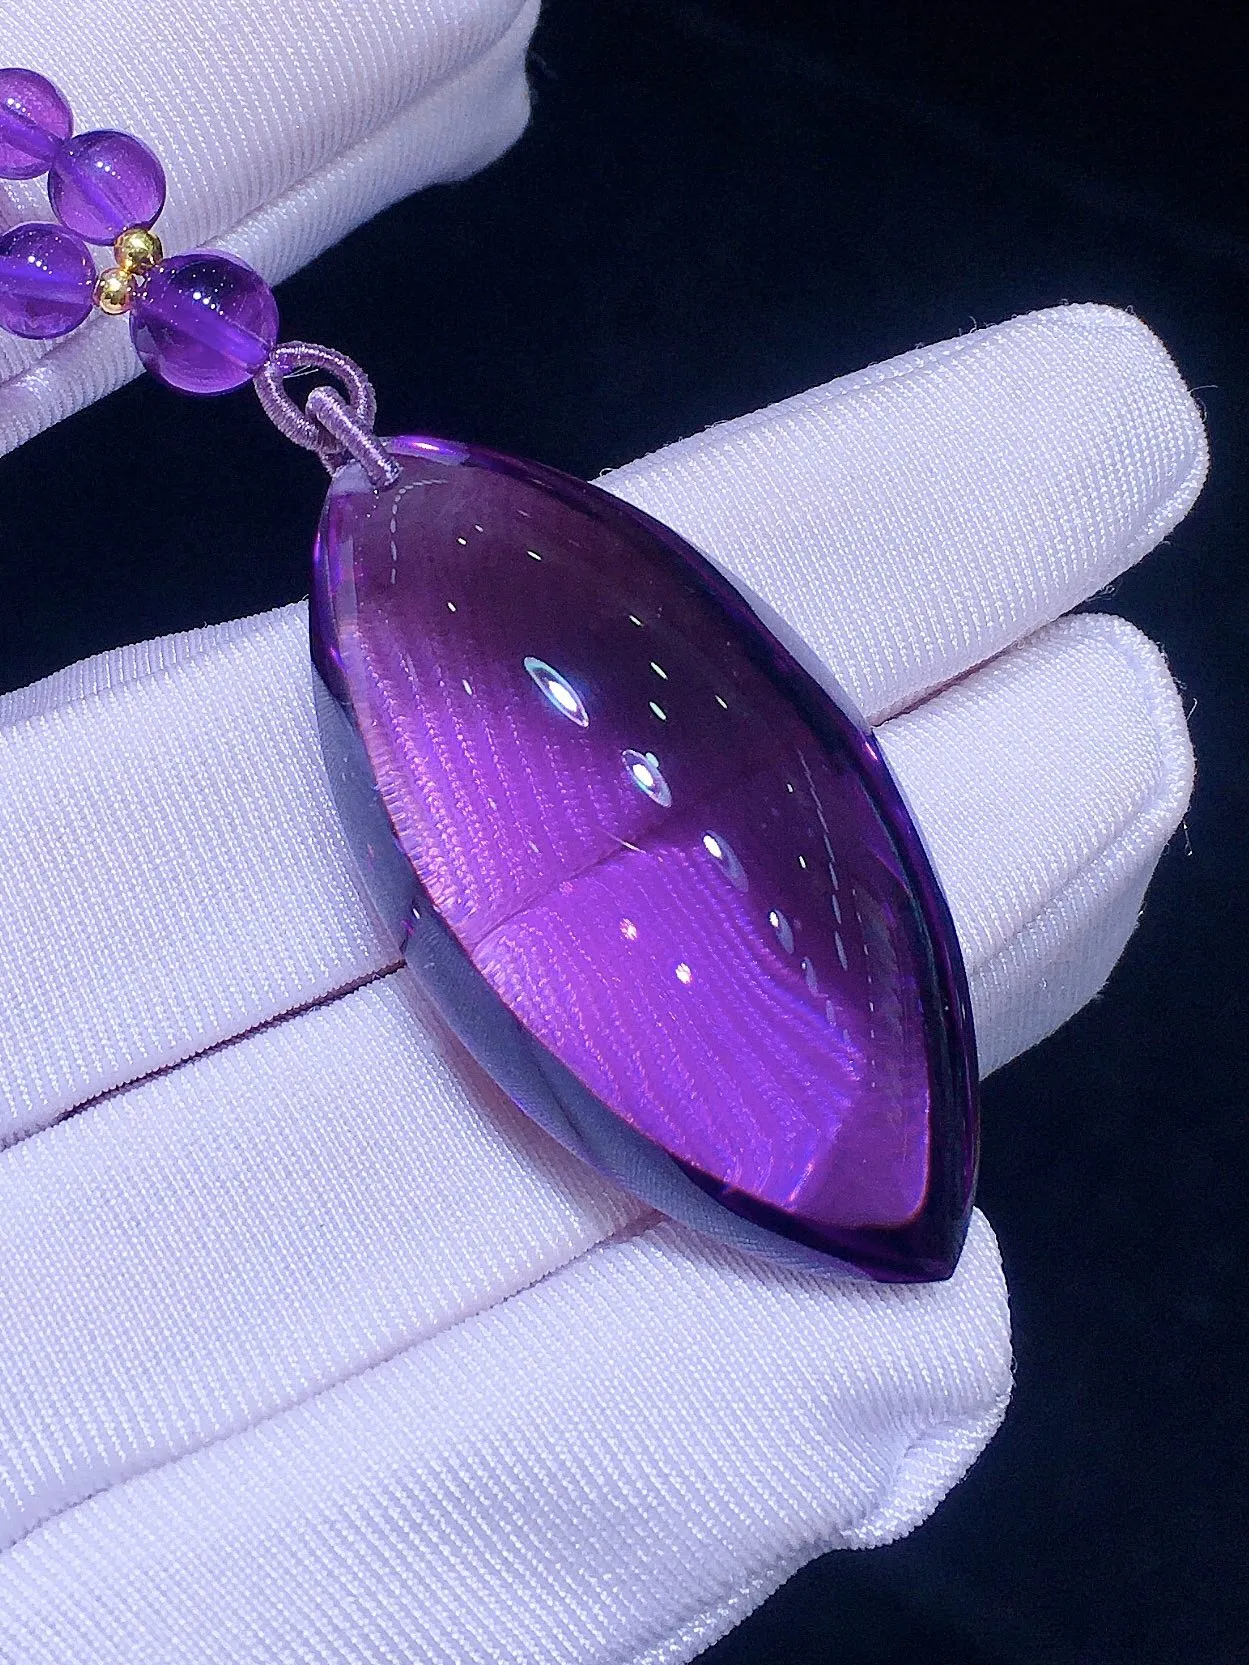 天然乌拉圭紫水晶大吊坠   紫晶色彩梦幻 能量强大 定气凝神 促进家庭和谐 招贵人 旺生意缘 紫